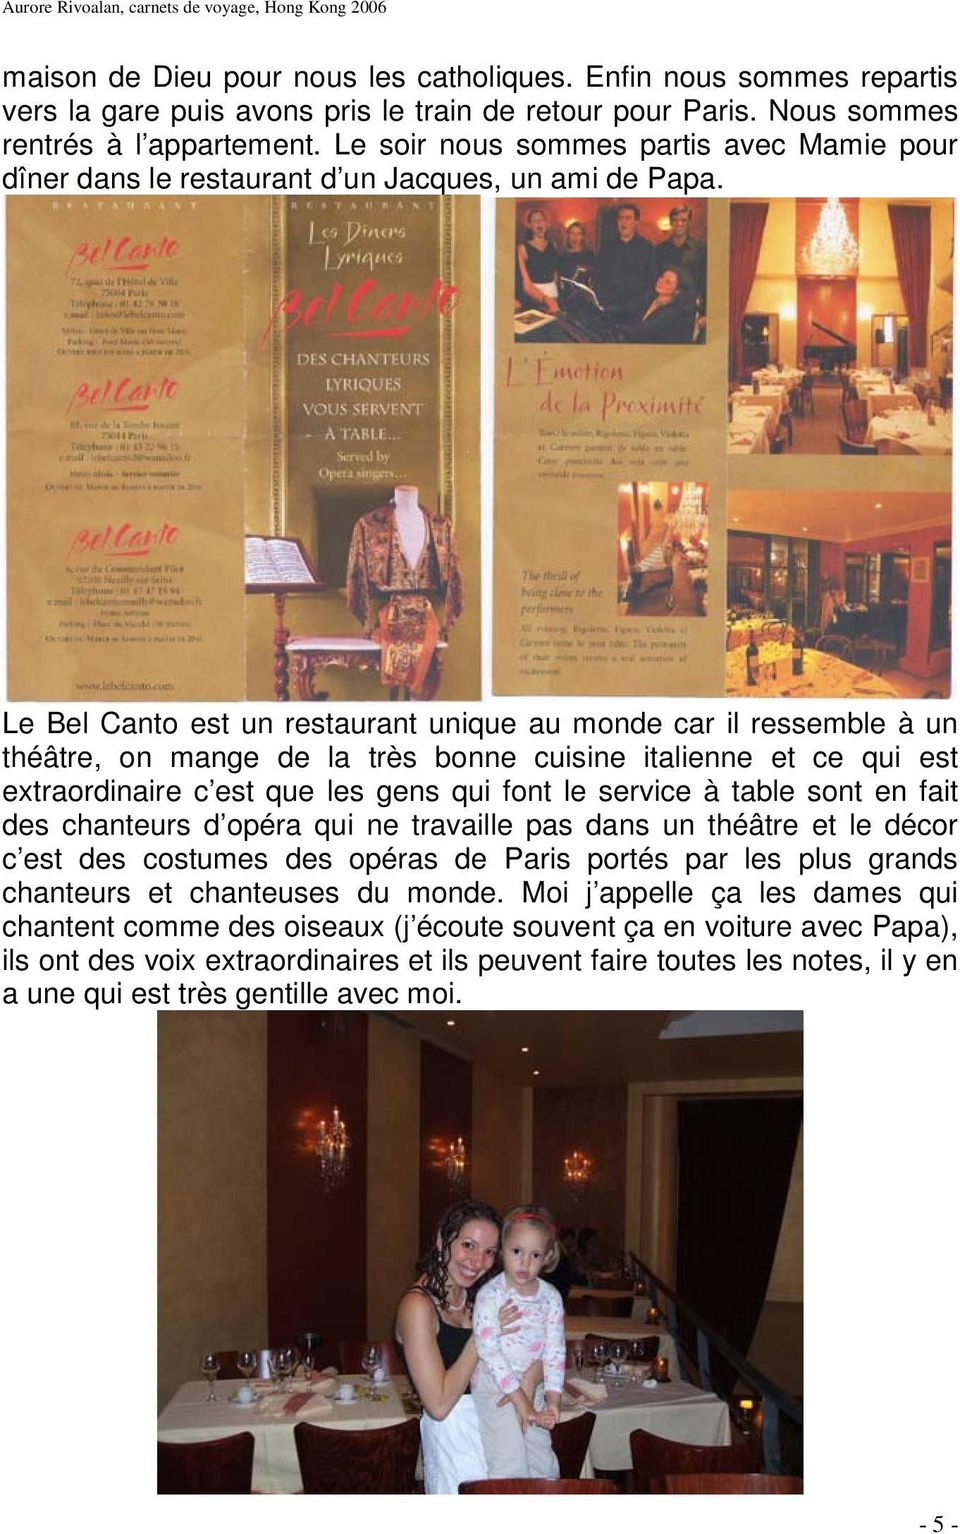 Le Bel Canto est un restaurant unique au monde car il ressemble à un théâtre, on mange de la très bonne cuisine italienne et ce qui est extraordinaire c est que les gens qui font le service à table